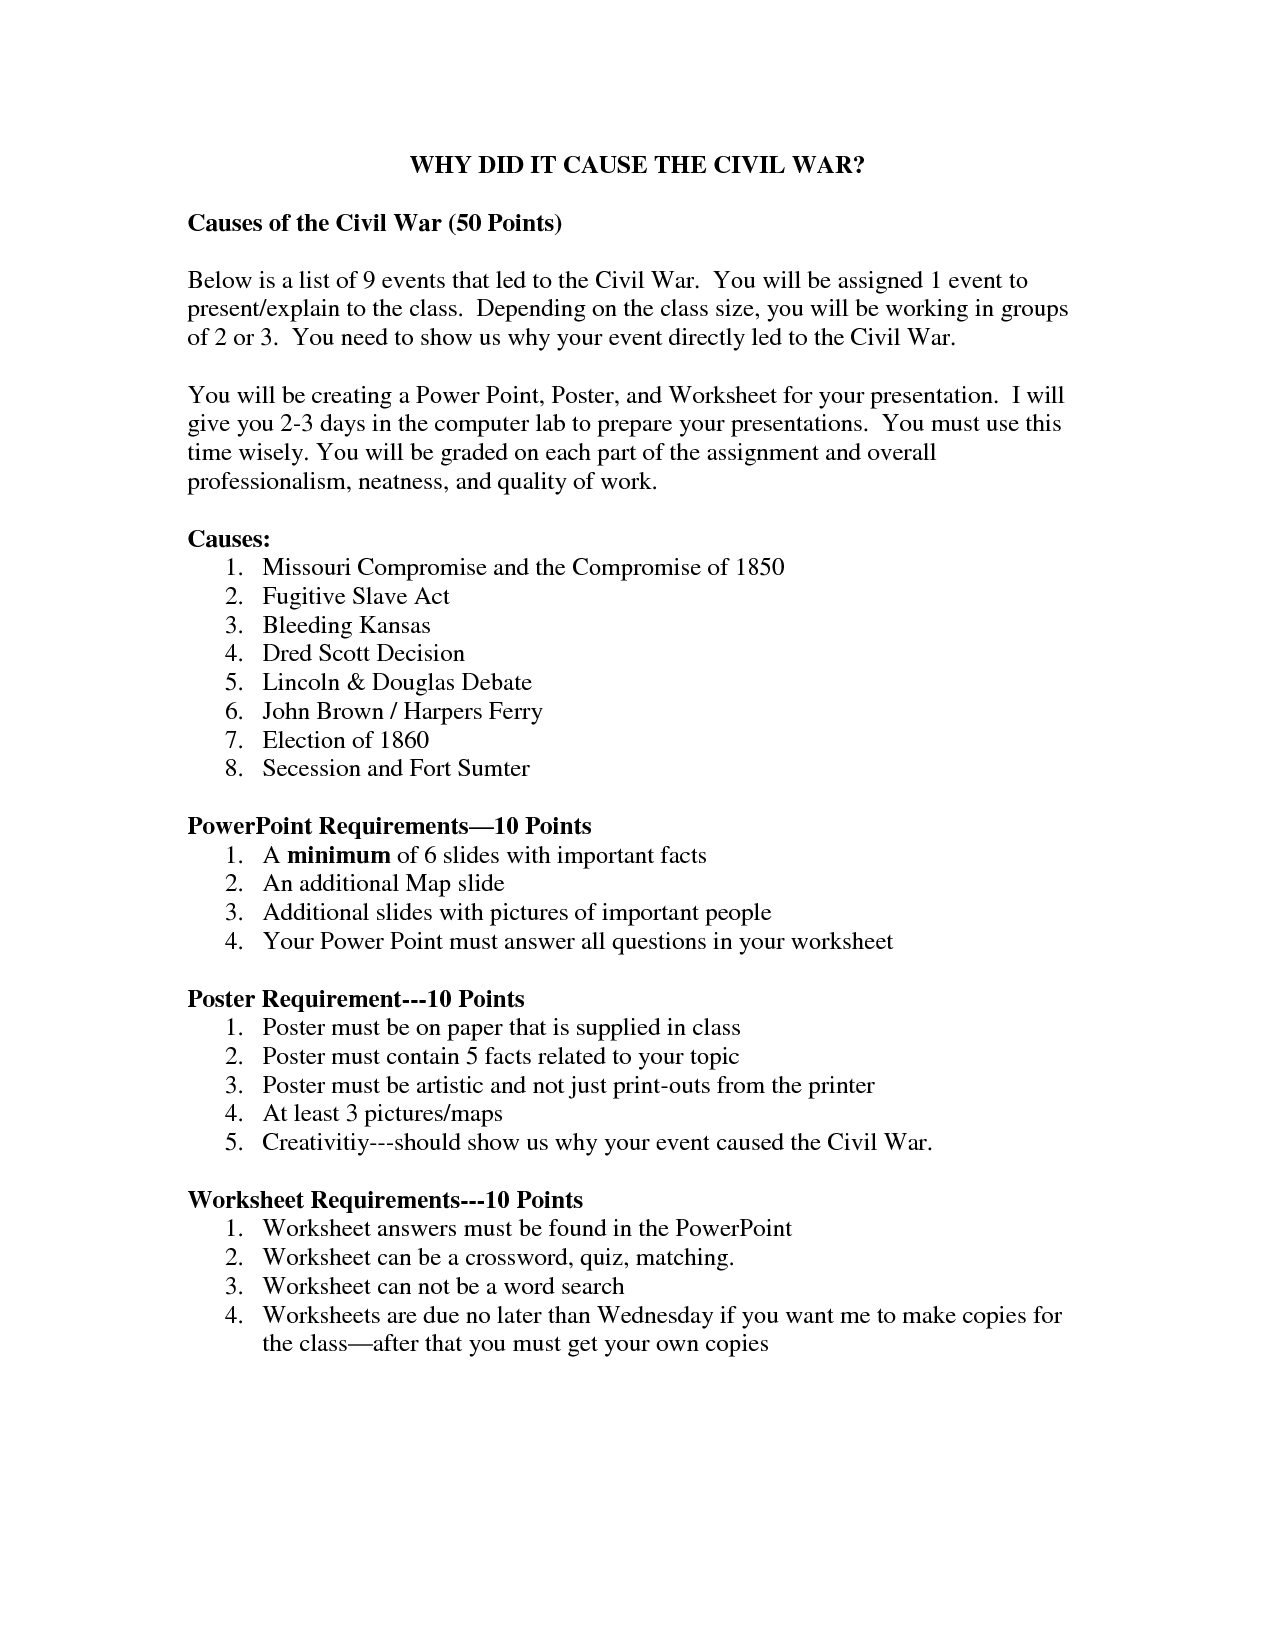 Causes of Civil War Worksheets 8th Grade